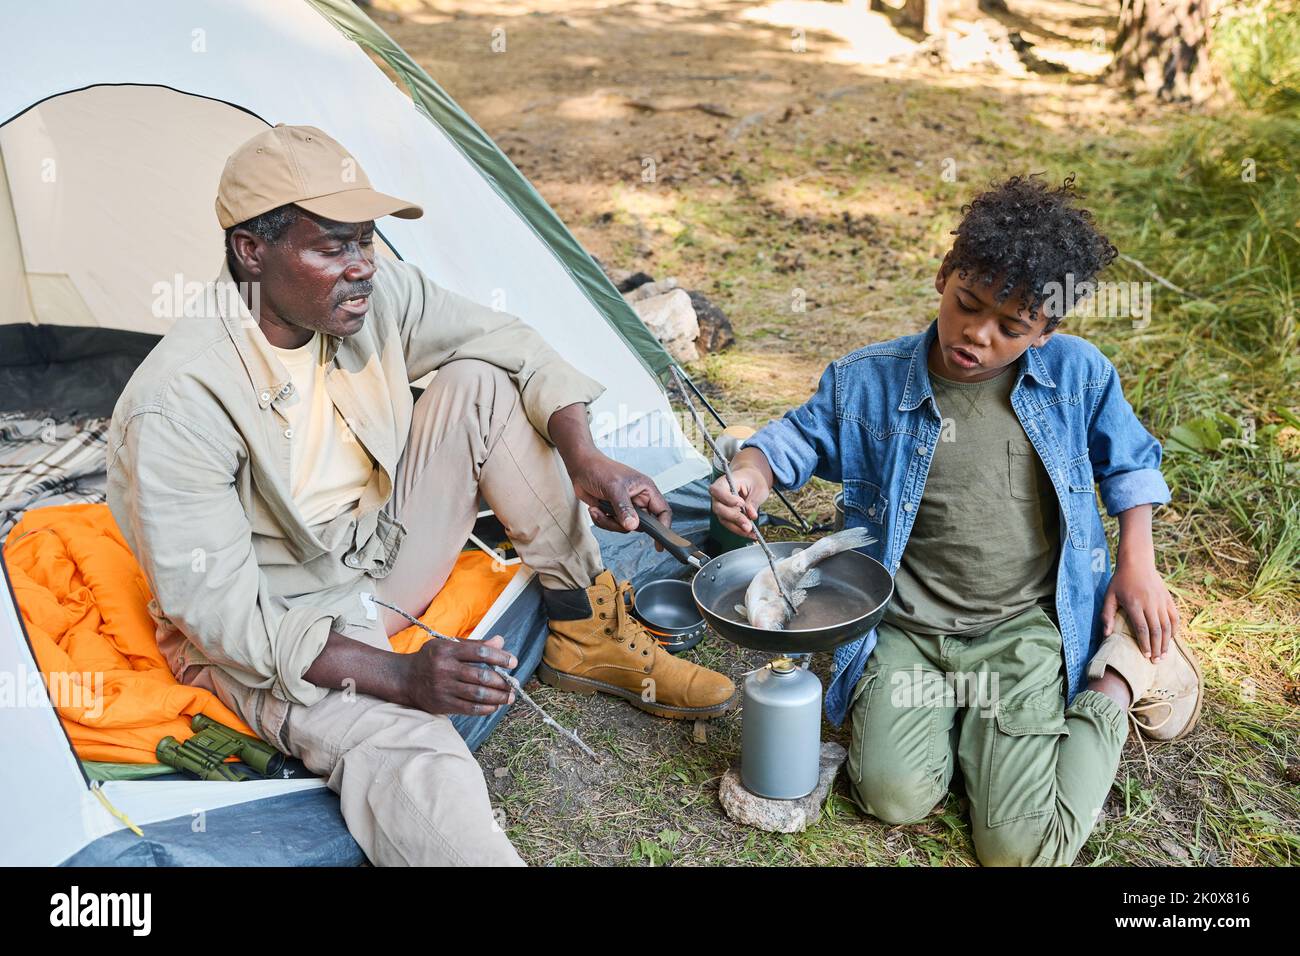 Älterer schwarzer Mann und sein Enkel kochen frischen Fisch auf der Bratpfanne, während sie am Zelt auf dem Boden sitzen und eine Wanderung im Wald genießen Stockfoto